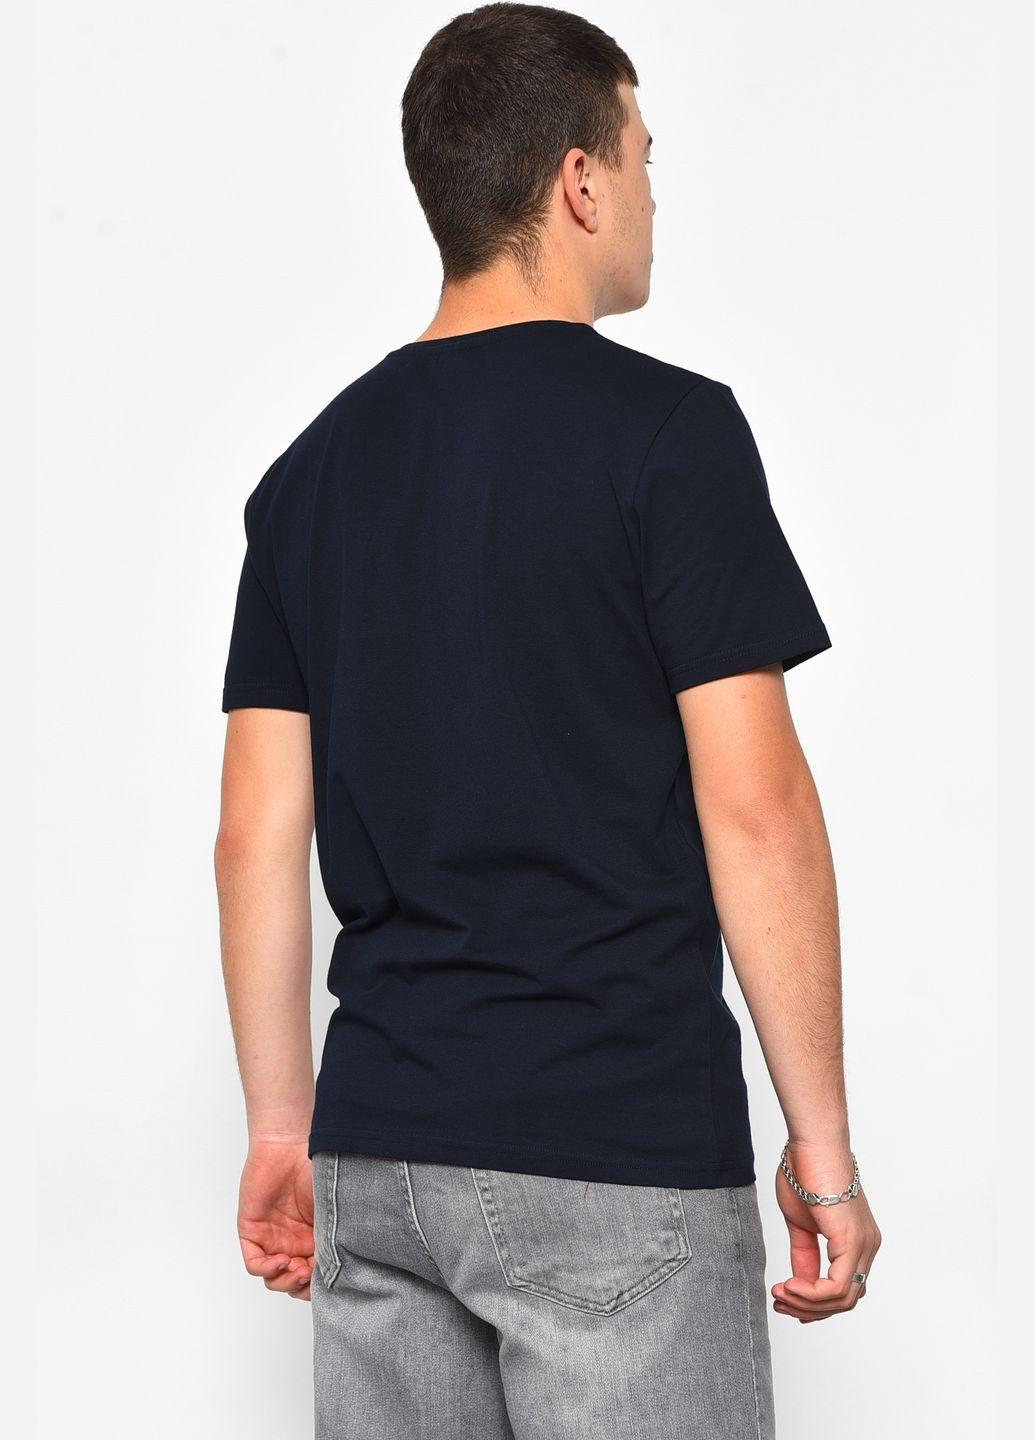 Темно-синя футболка чоловіча напівбатальна темно-синього кольору Let's Shop